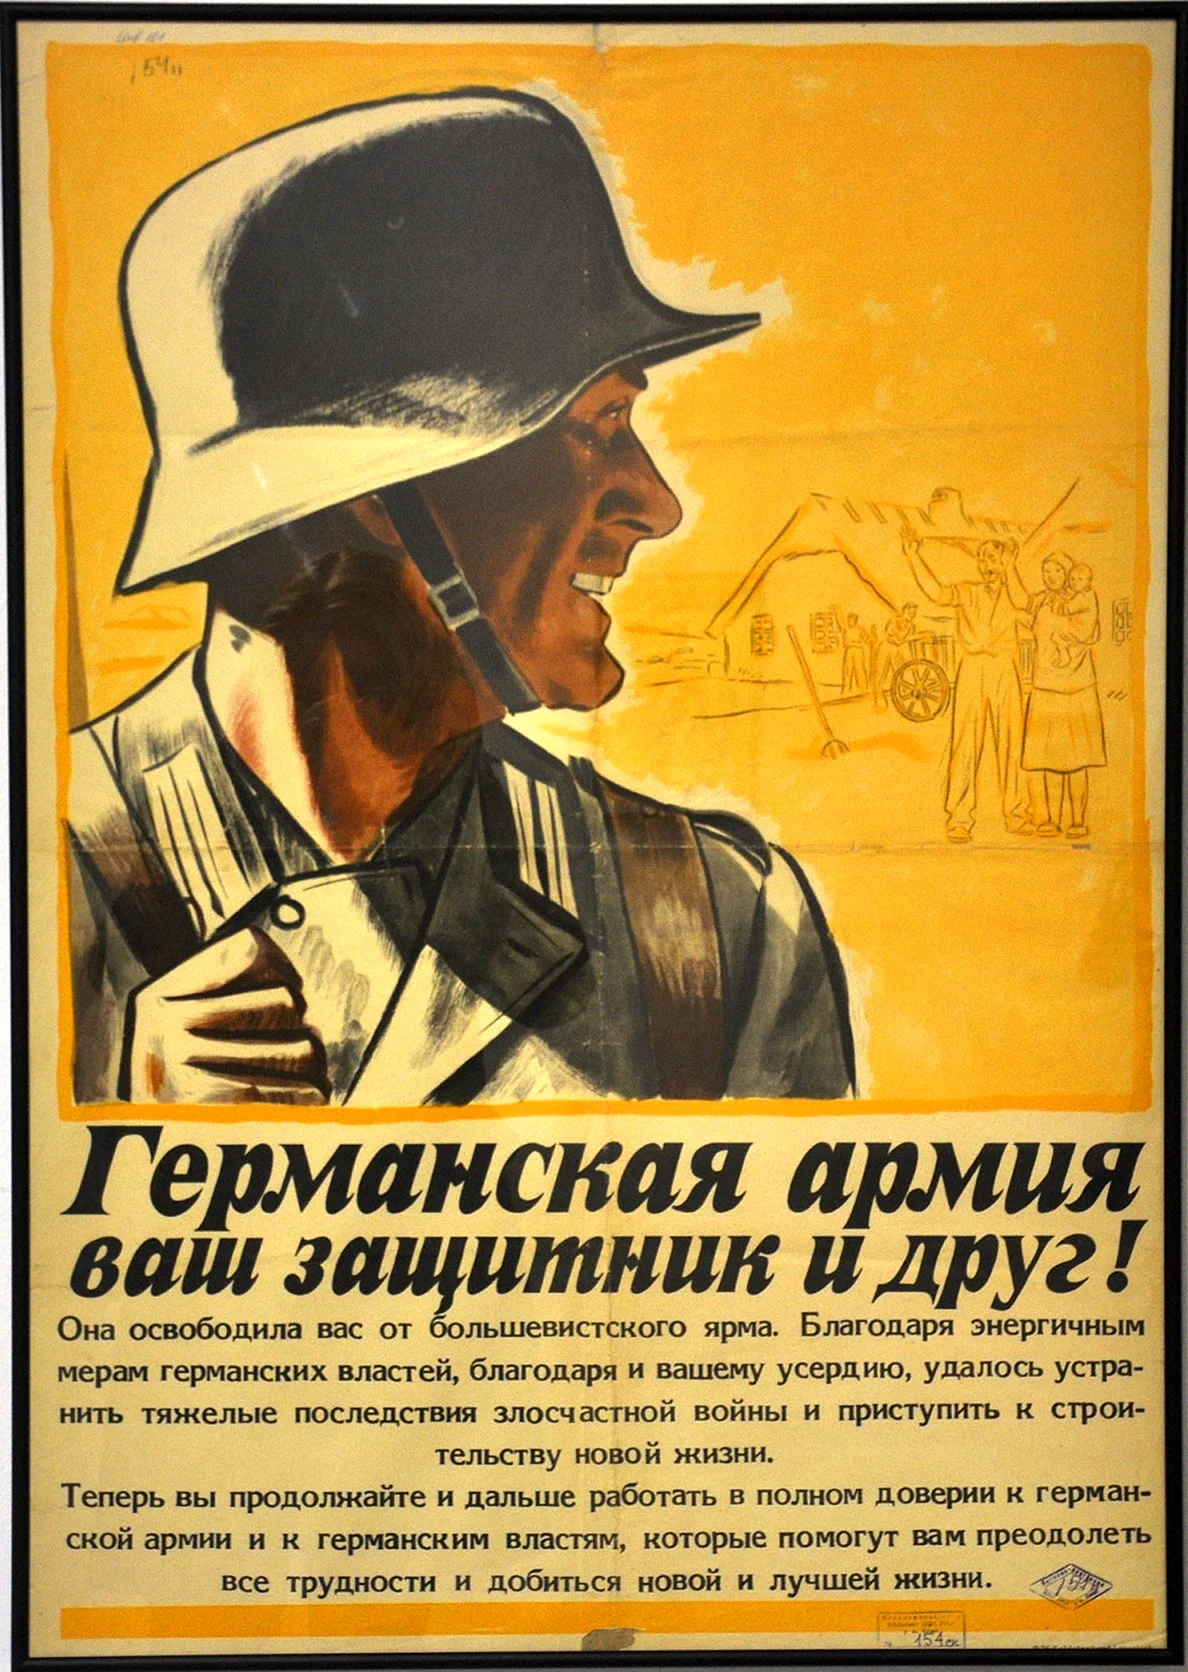 Агитационный плакат Германии второй мировой войны